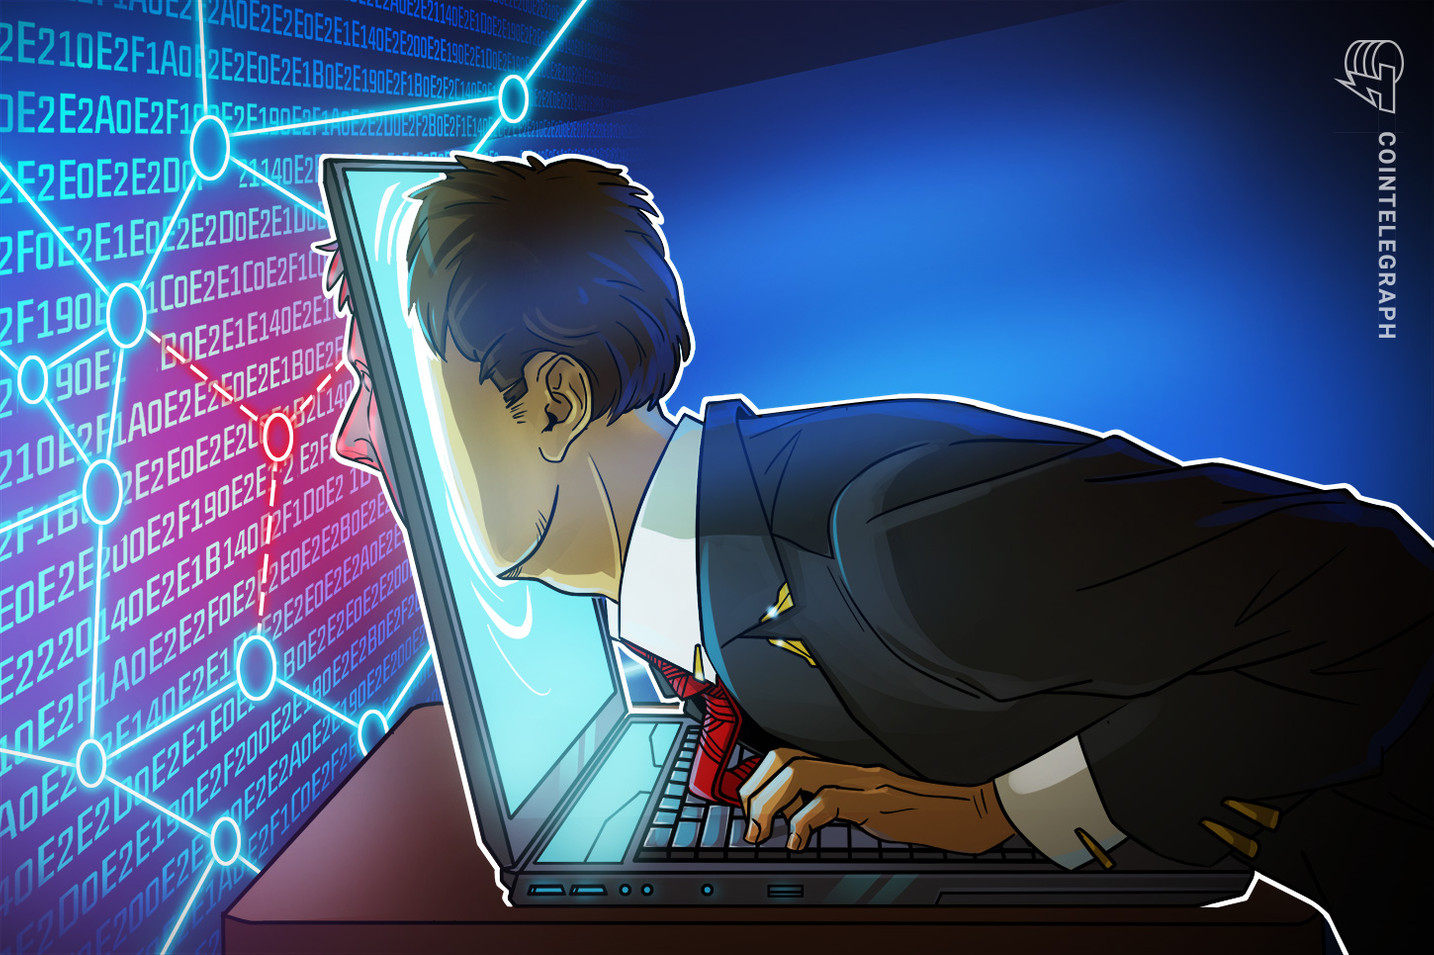  Geist Finance, un prestamista de criptomonedas, cierra permanentemente por el hackeo de Multichain 